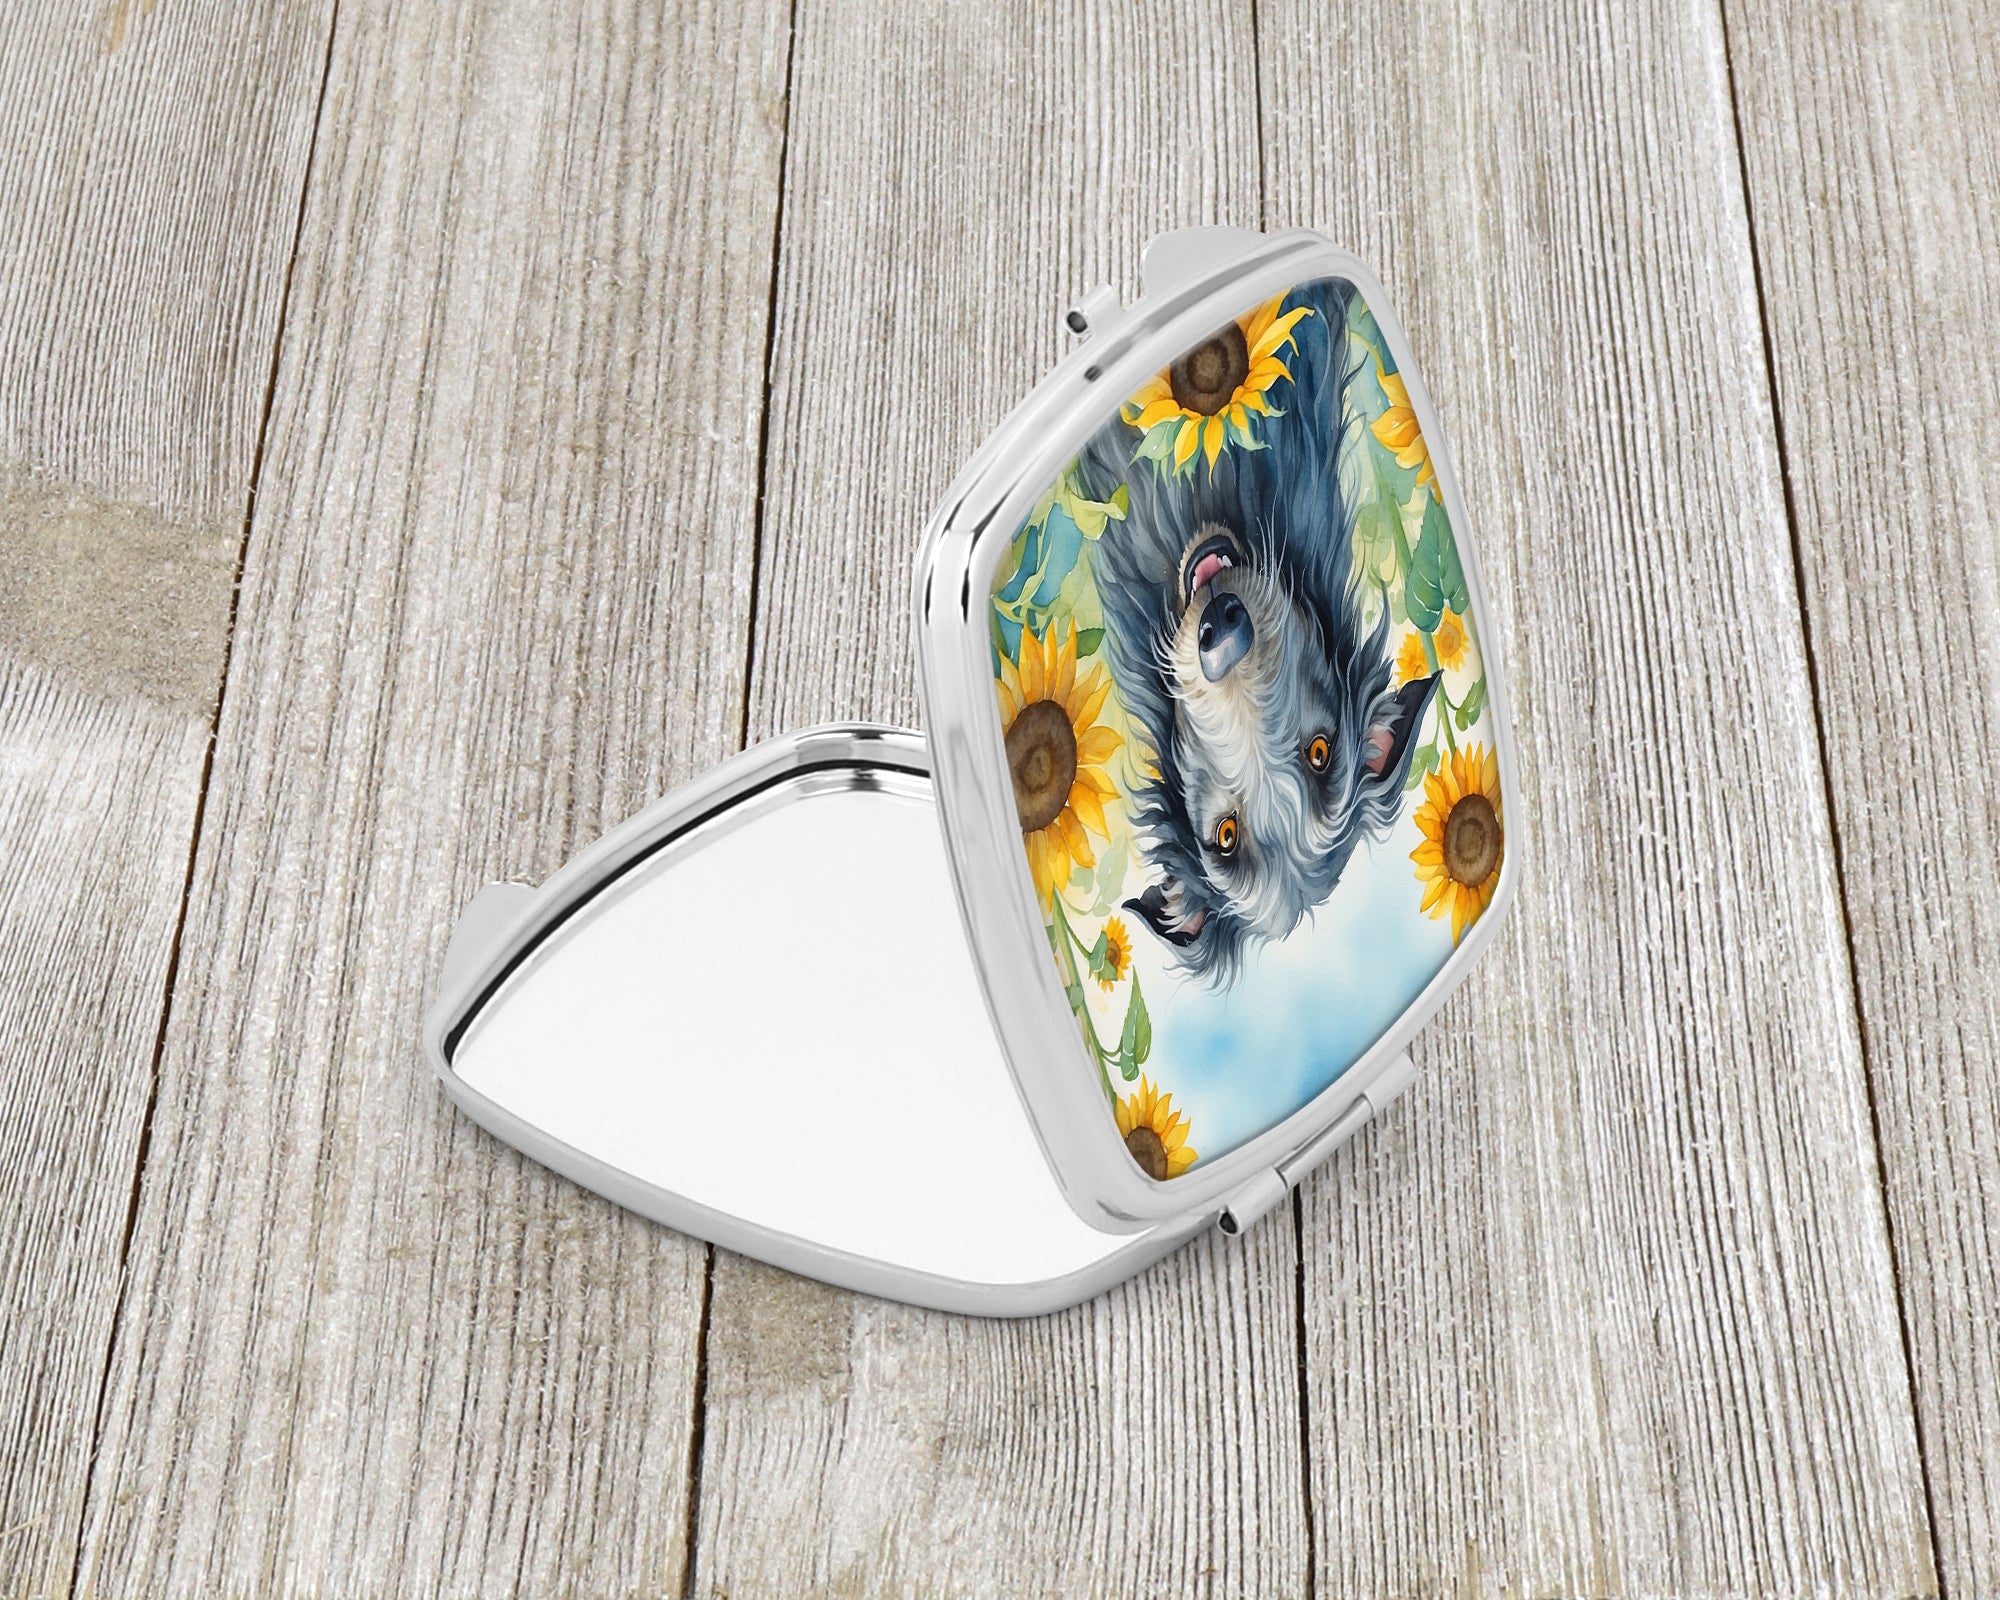 Buy this Scottish Deerhound in Sunflowers Compact Mirror